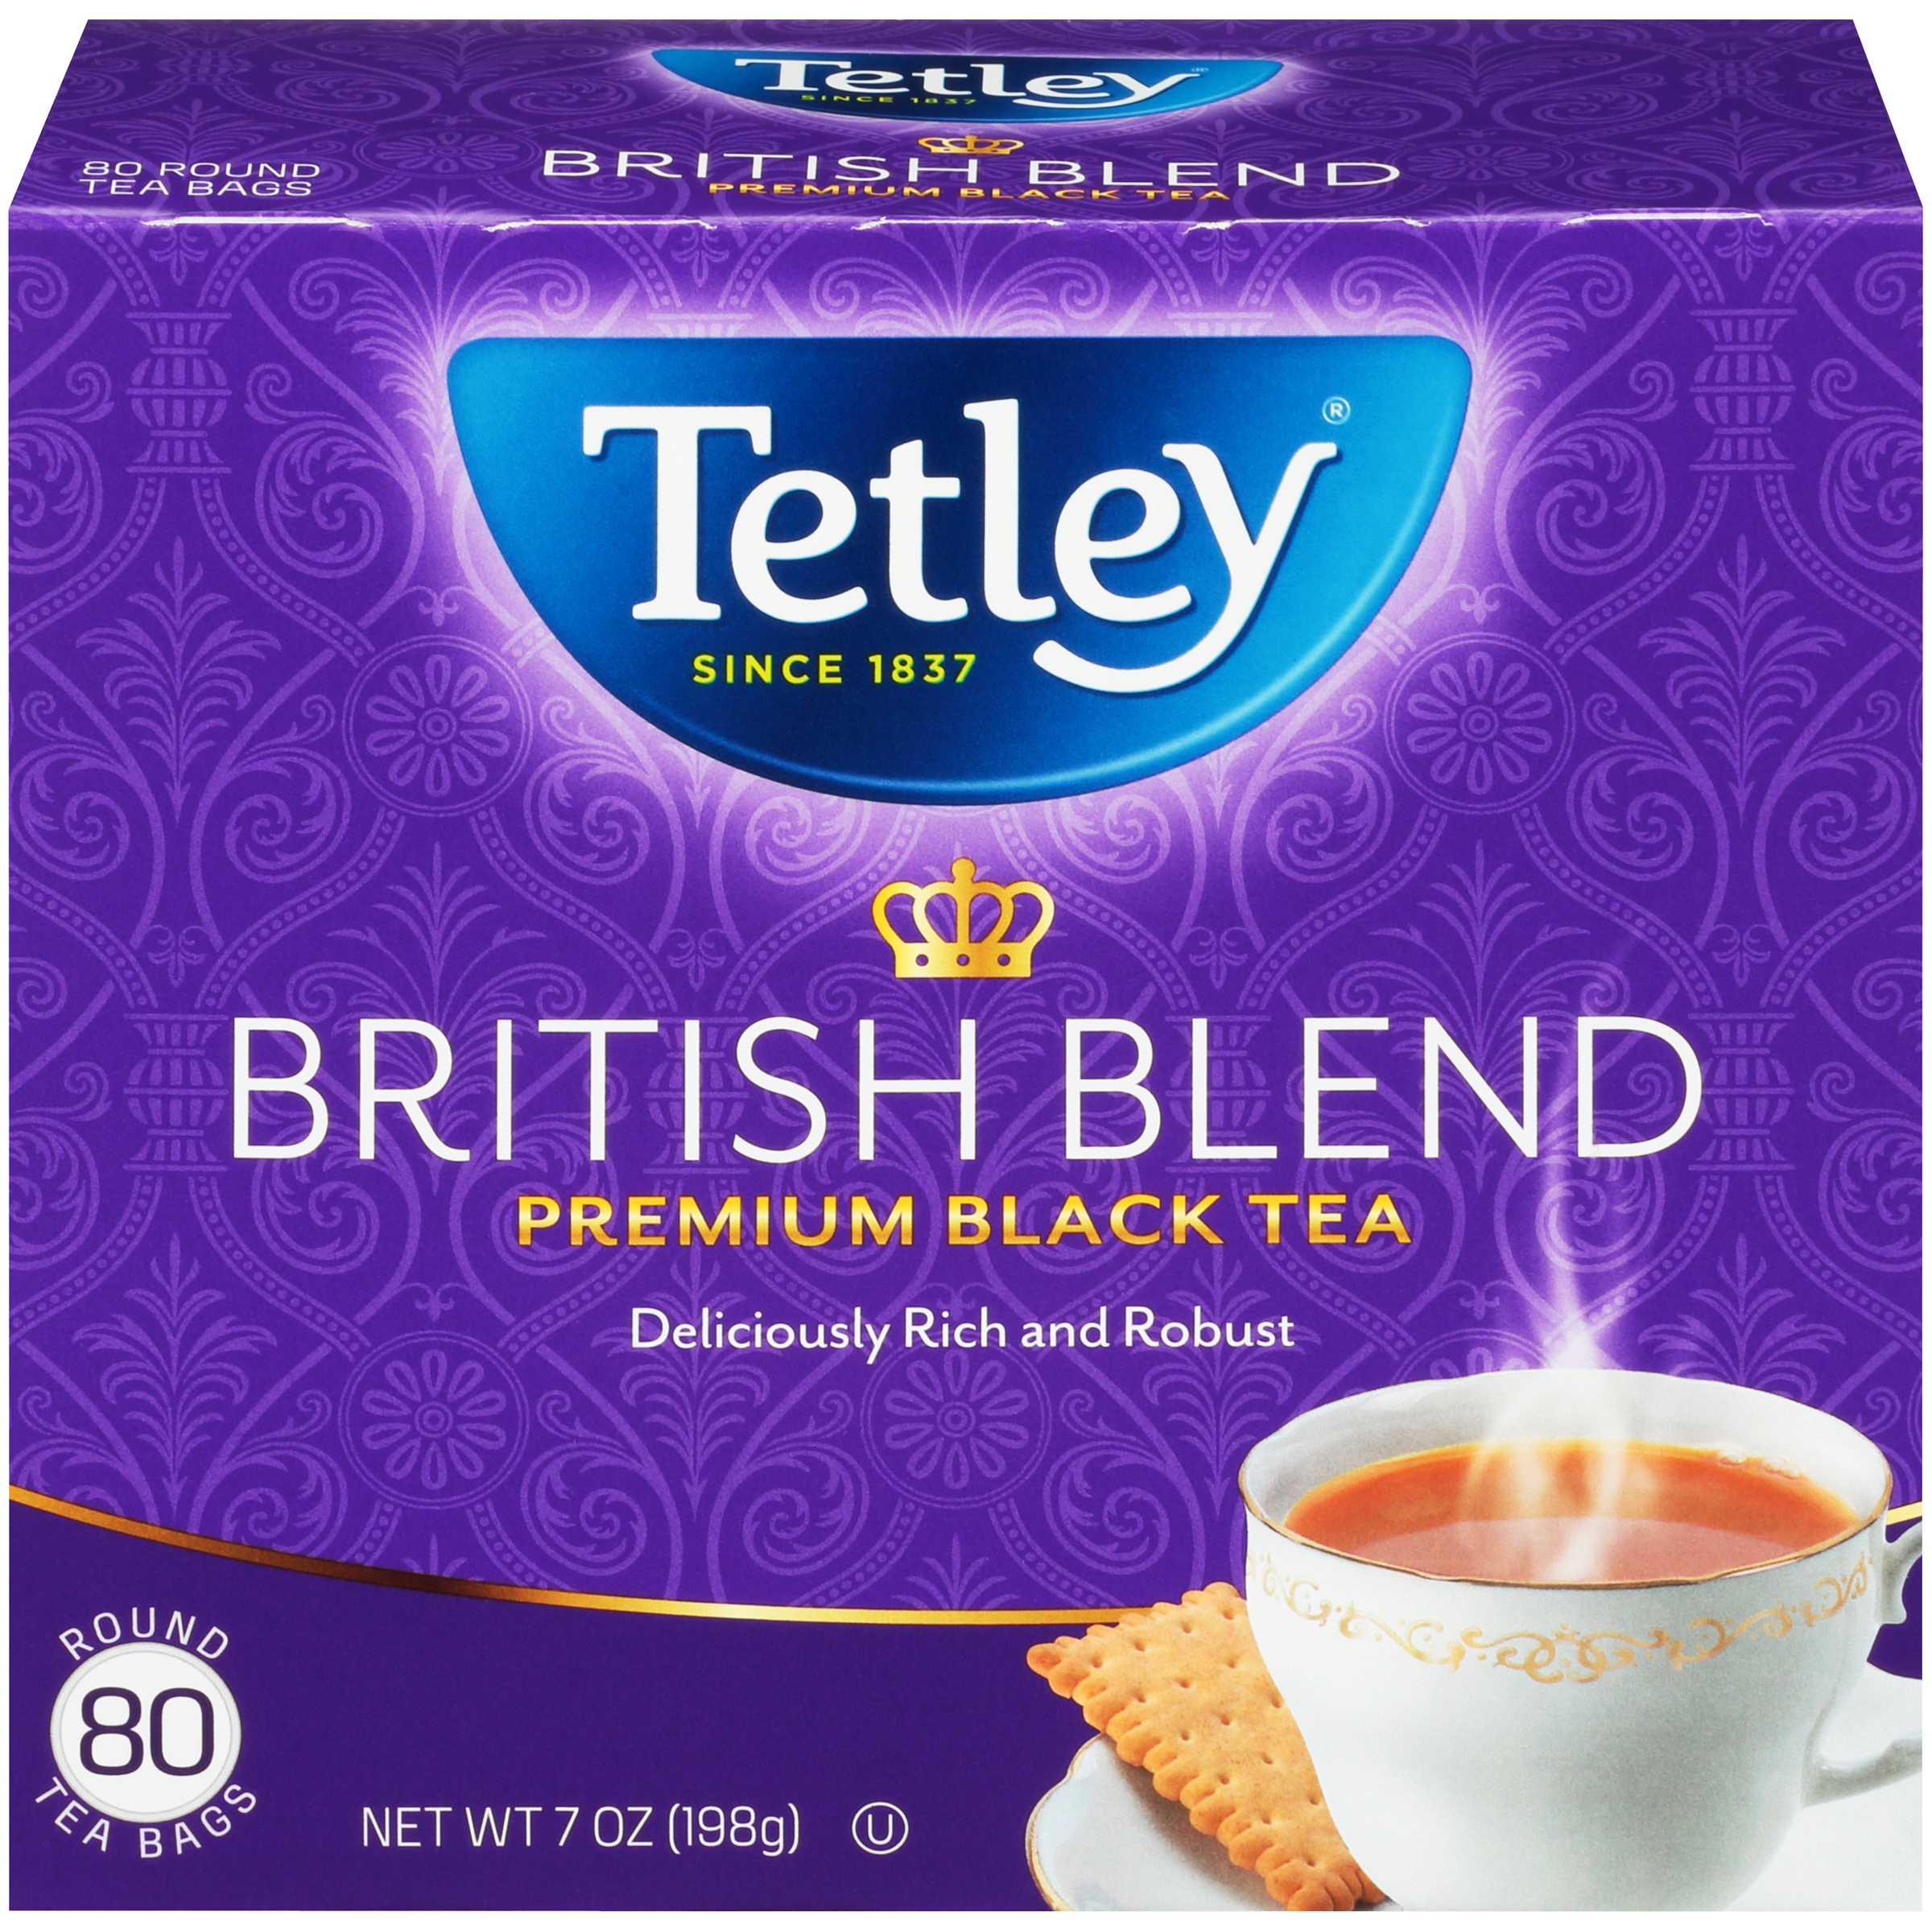 Tetley Black Tea, Classic, Bags 100 ea, Shop